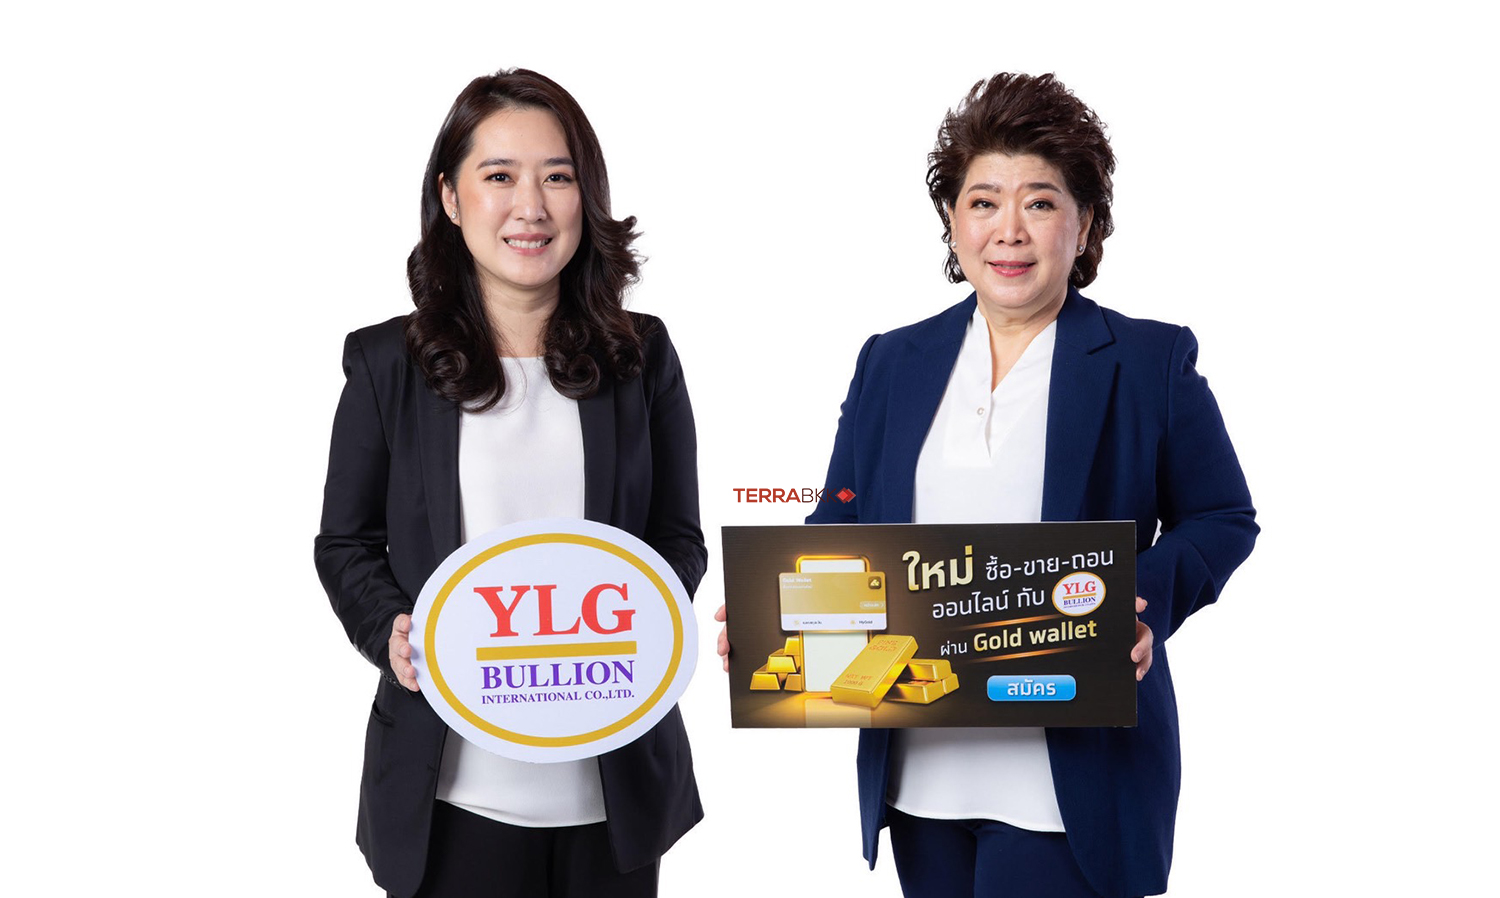 “กรุงไทย” เปิดเทรดทองออนไลน์กับ “วายแอลจี” ผ่าน Gold Wallet บนเป๋าตัง เริ่ม 10 พ.ย.นี้